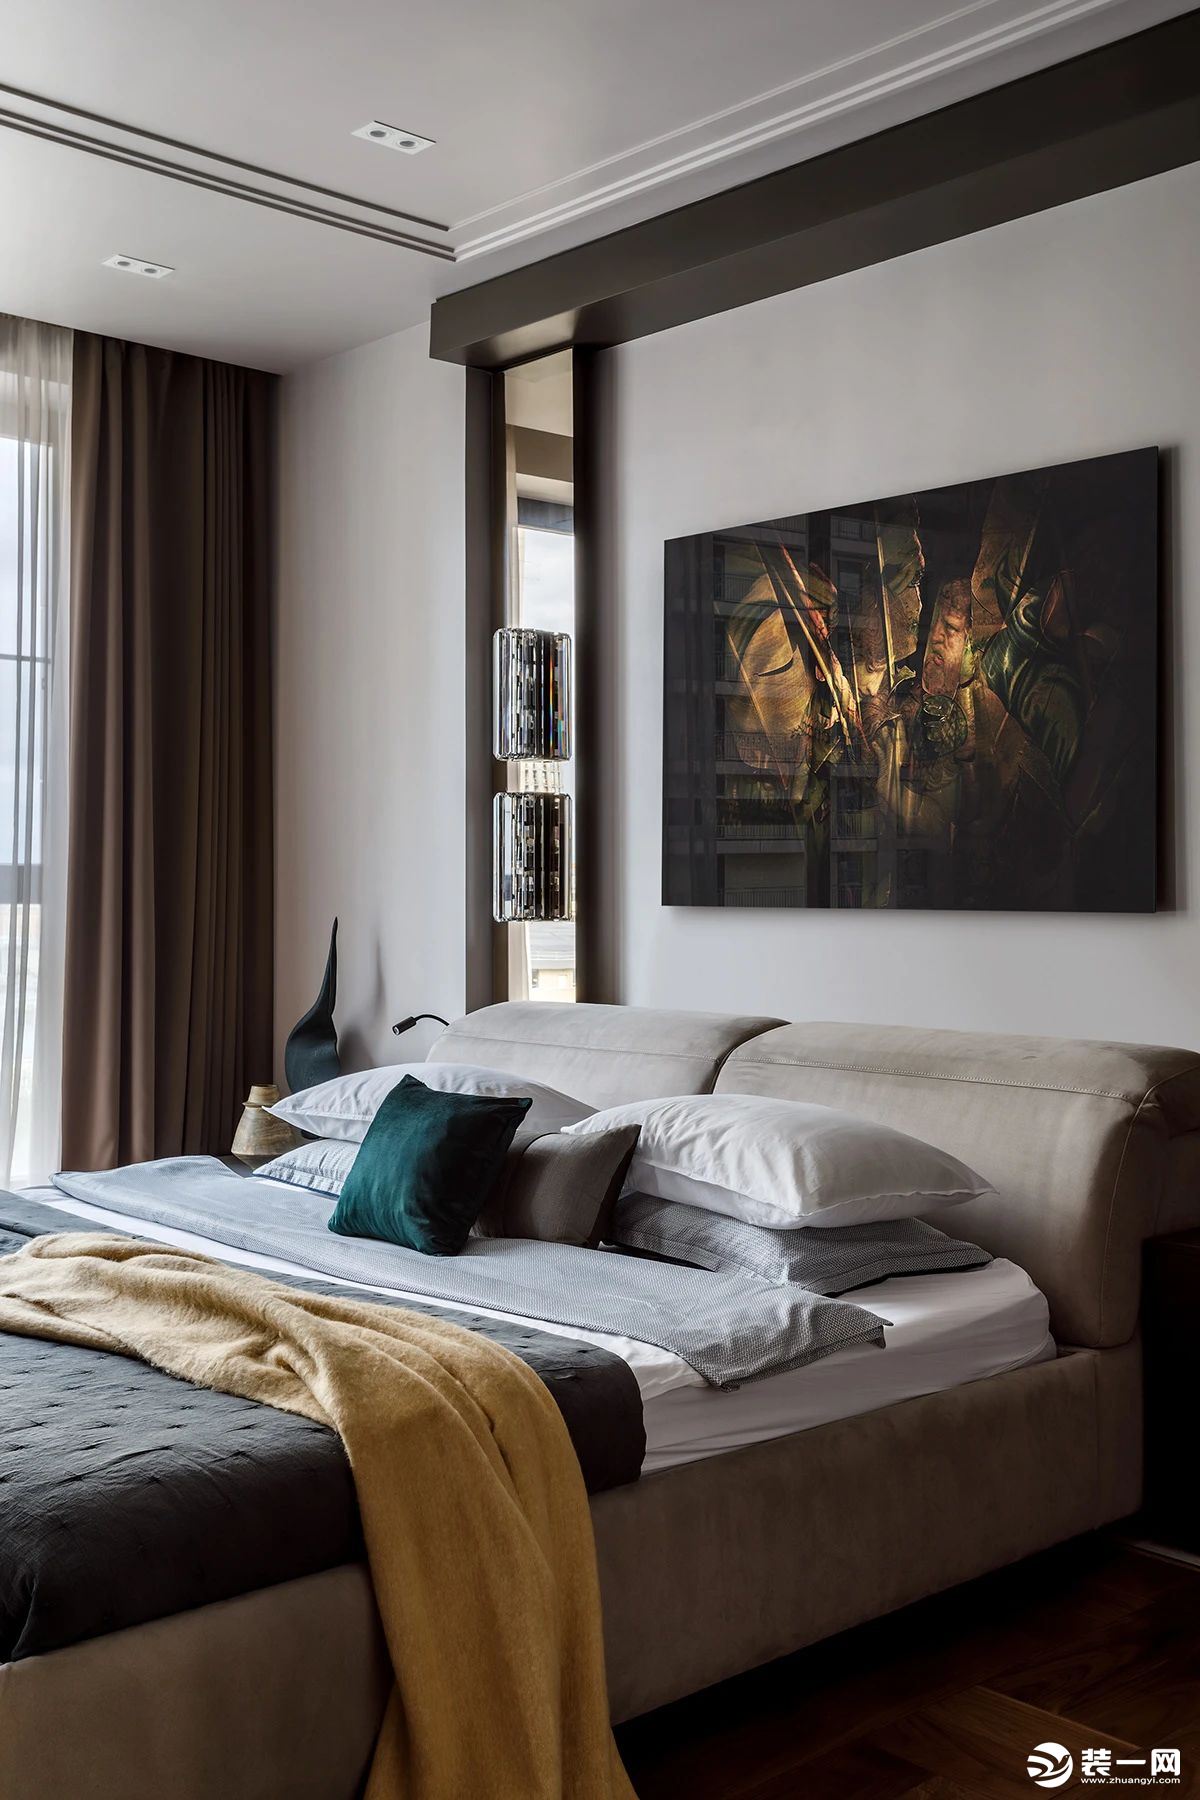 主卧室主要通过镜面、金属、木饰面等材料来表达空间质感，营造一种较为雅致和高贵的感觉